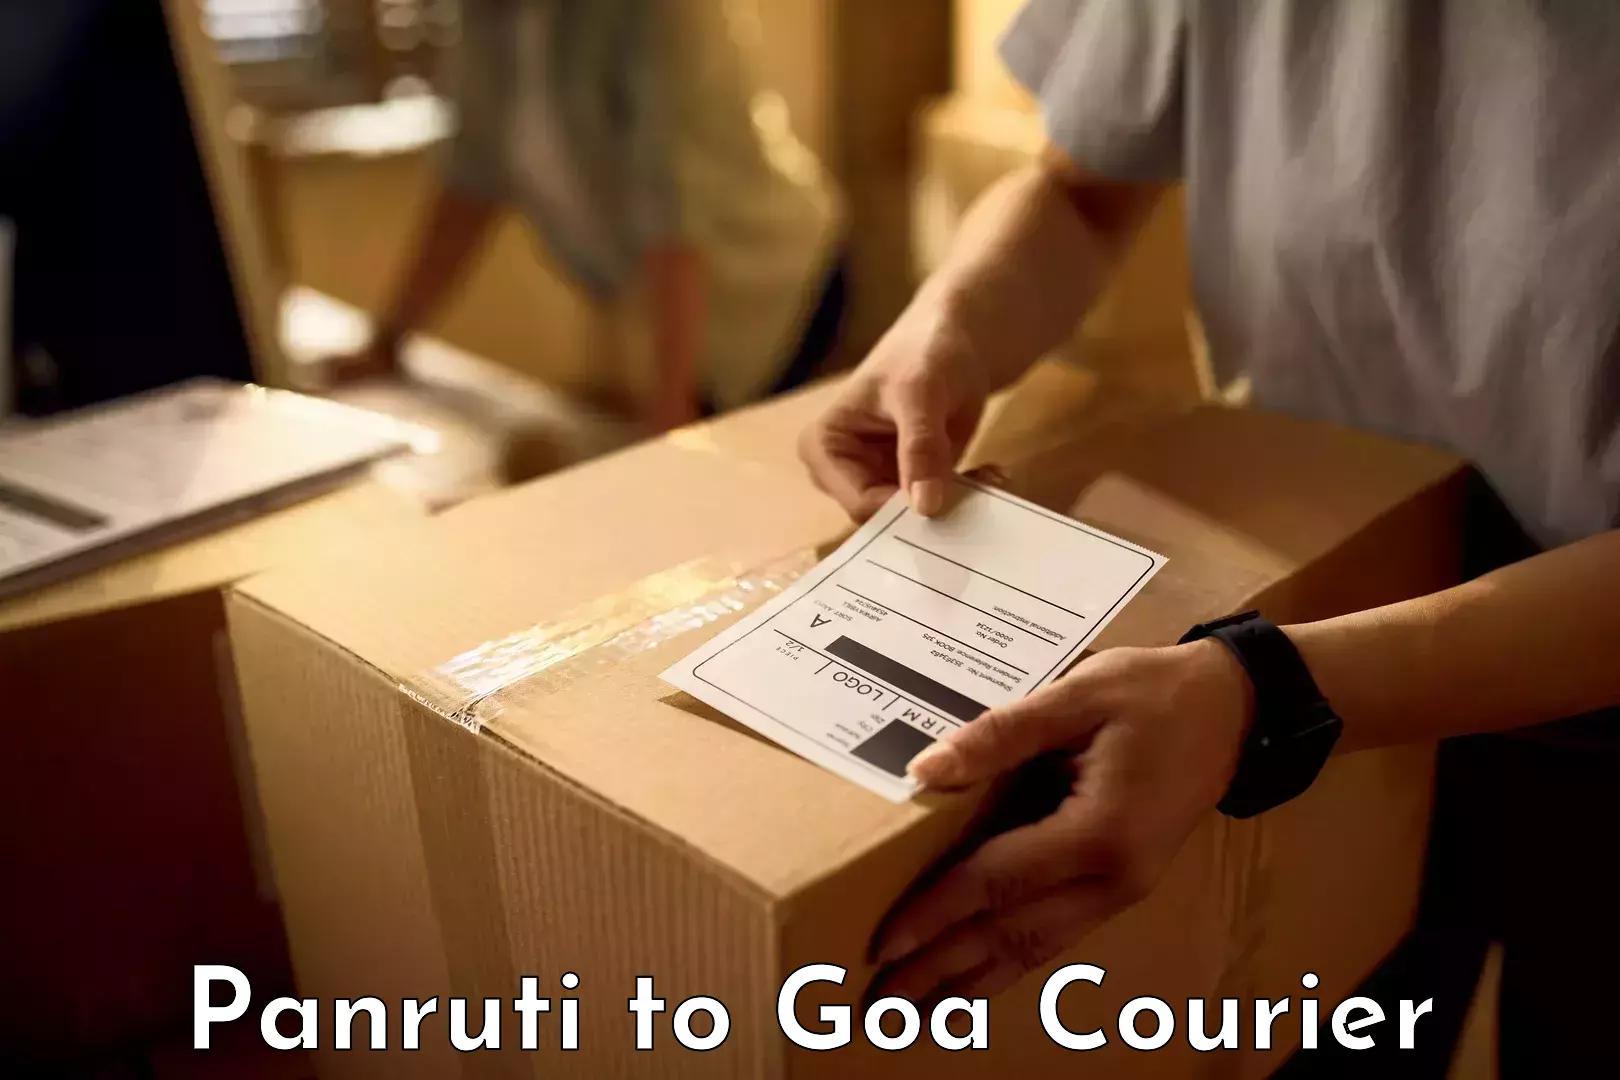 Baggage transport management Panruti to Goa